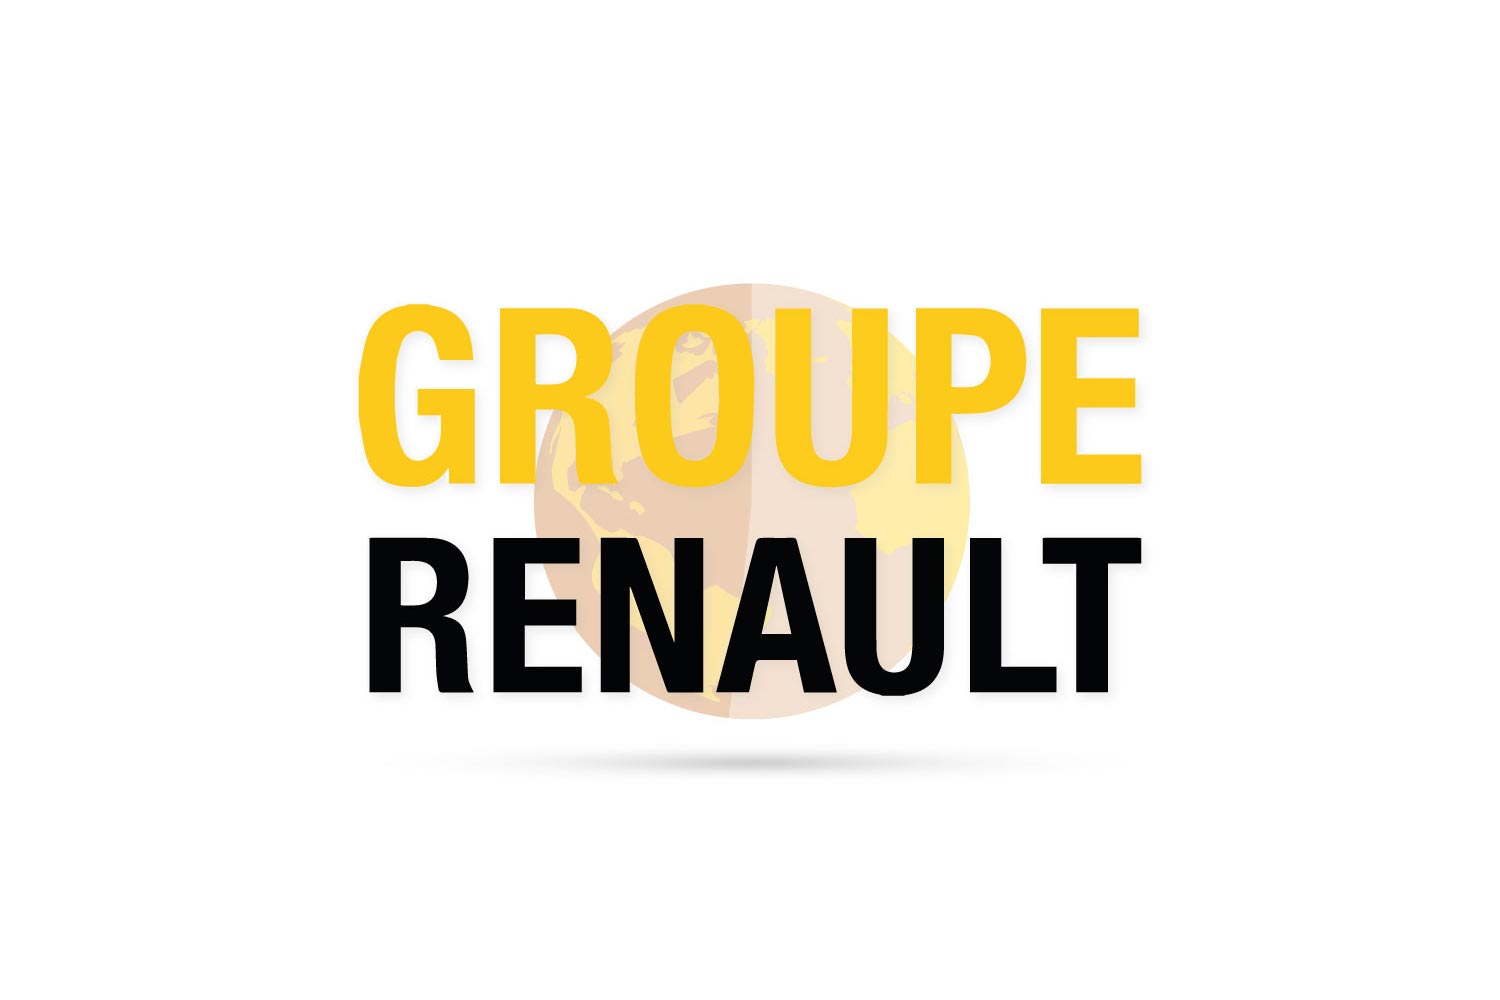 Wyniki Renault w kryzysowym półroczu